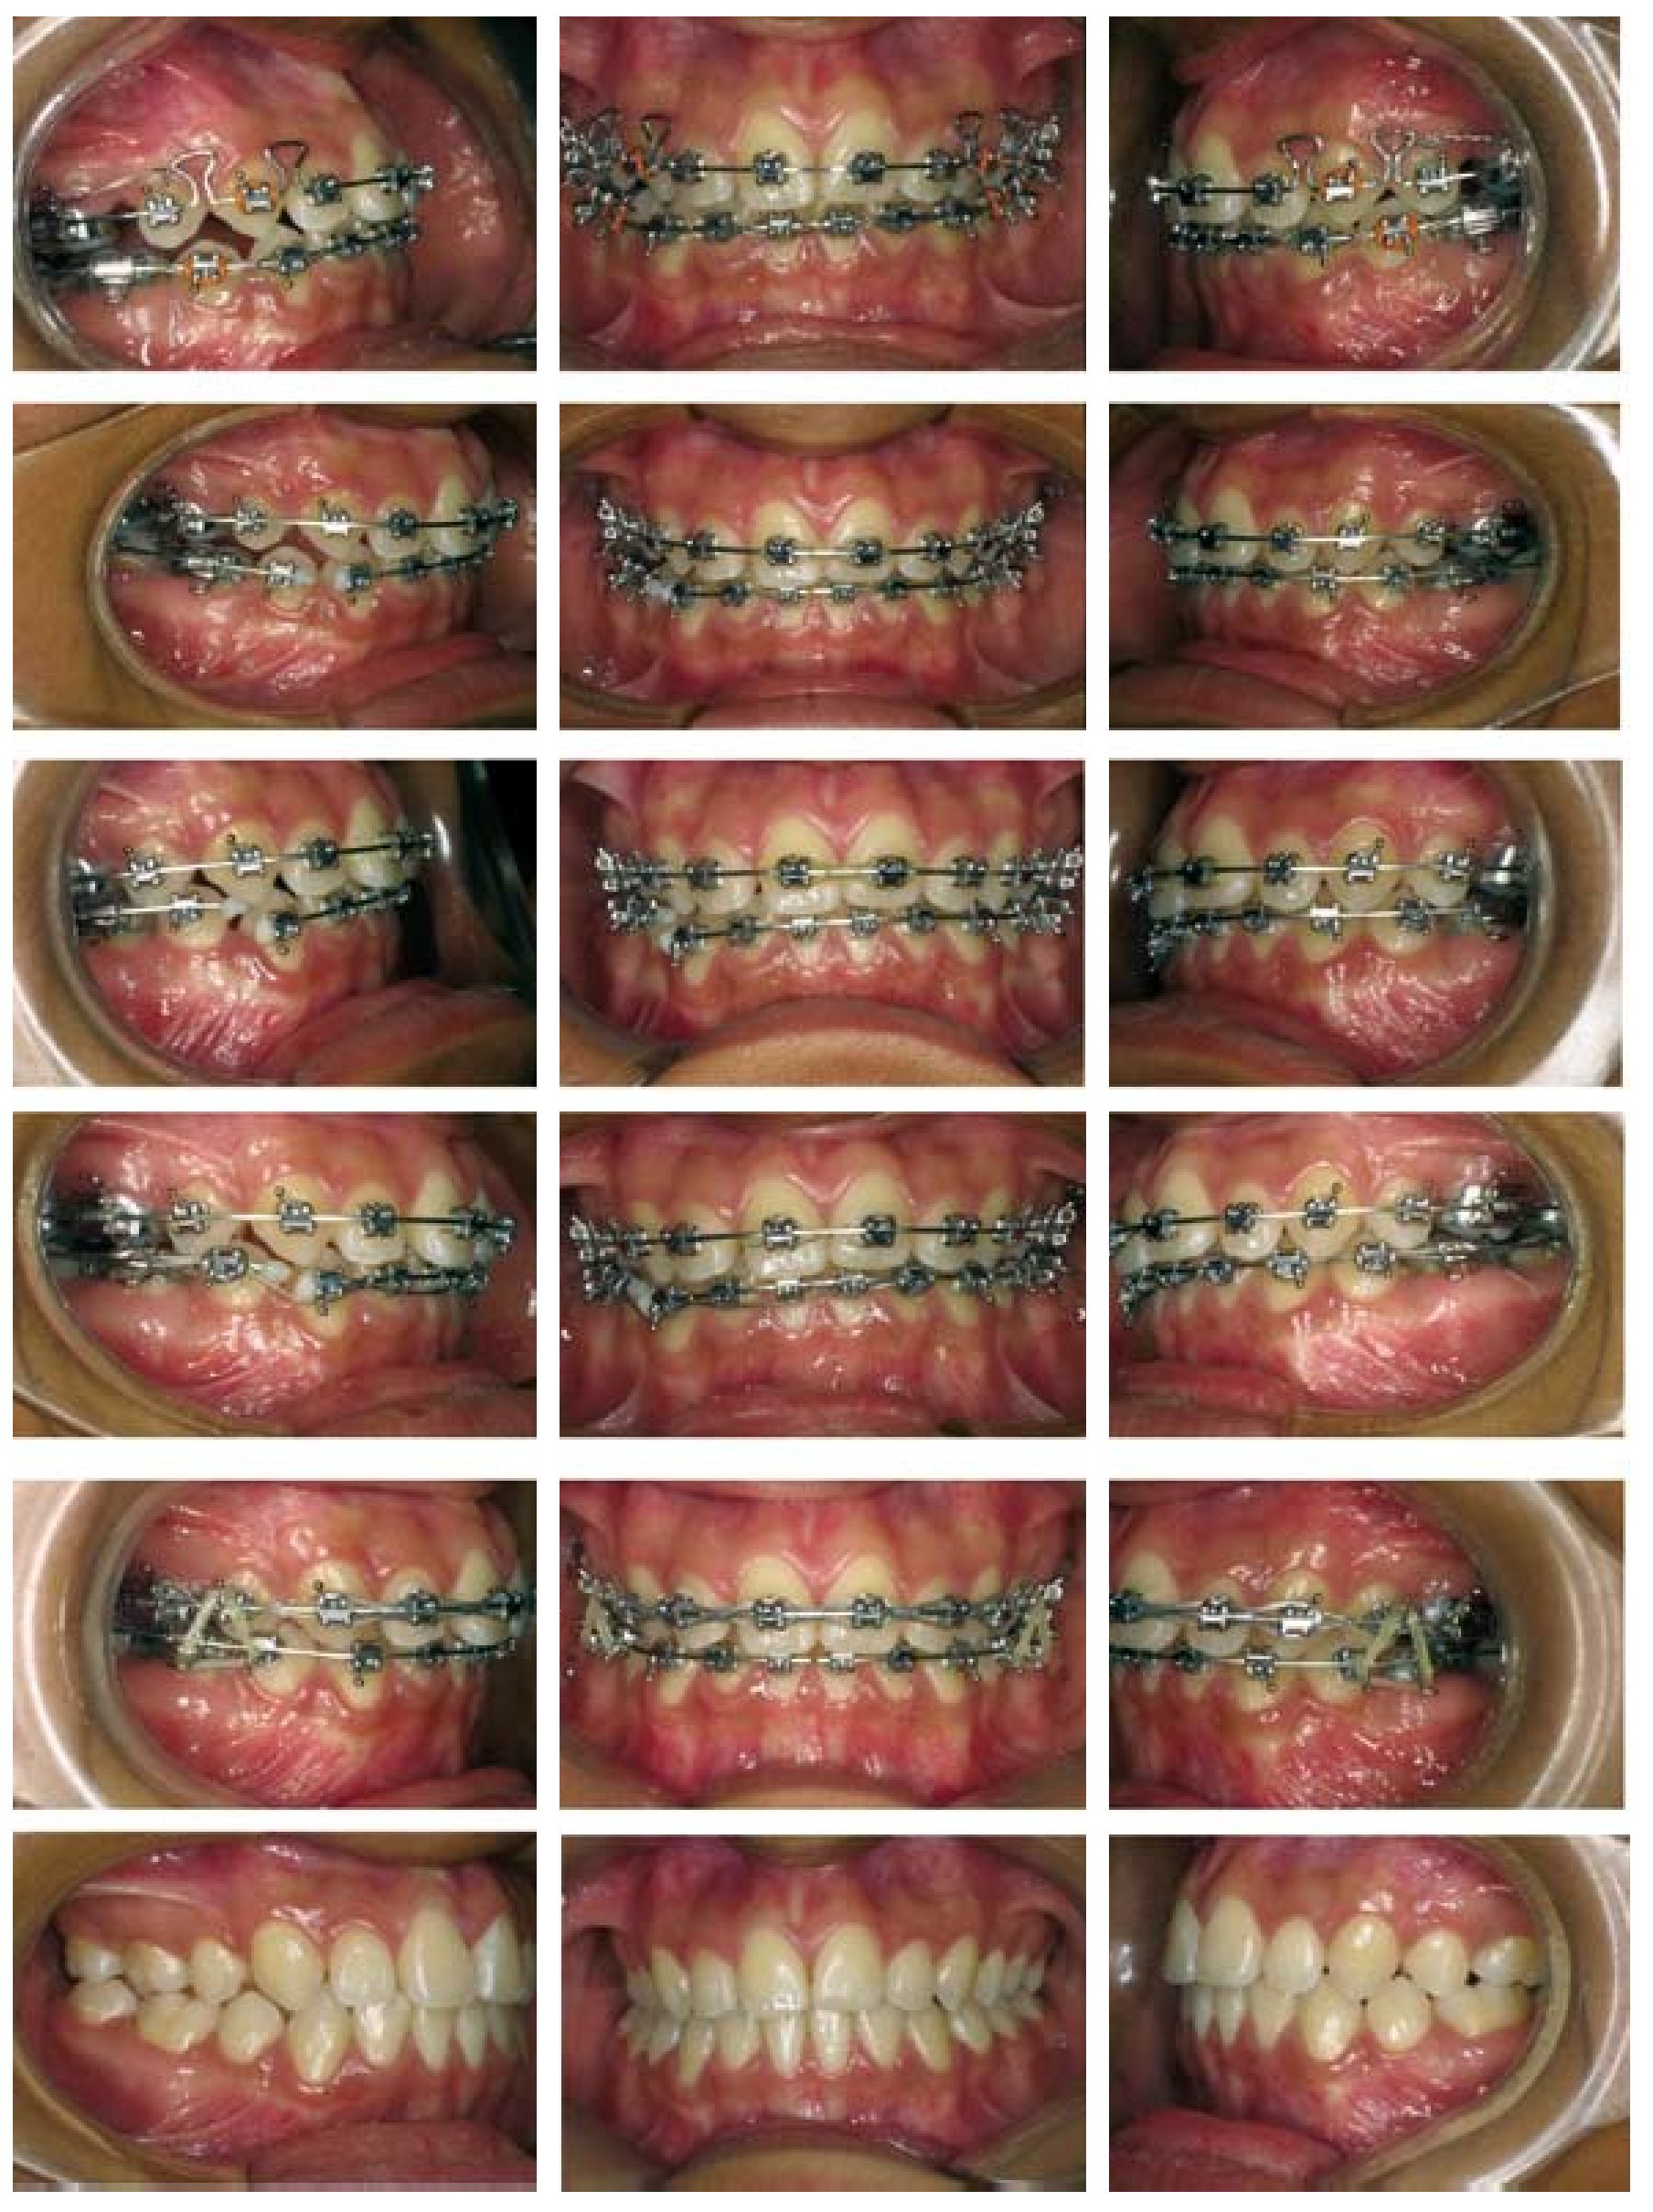 Los arcos dentales y su utilidad en ortodoncia con brackets